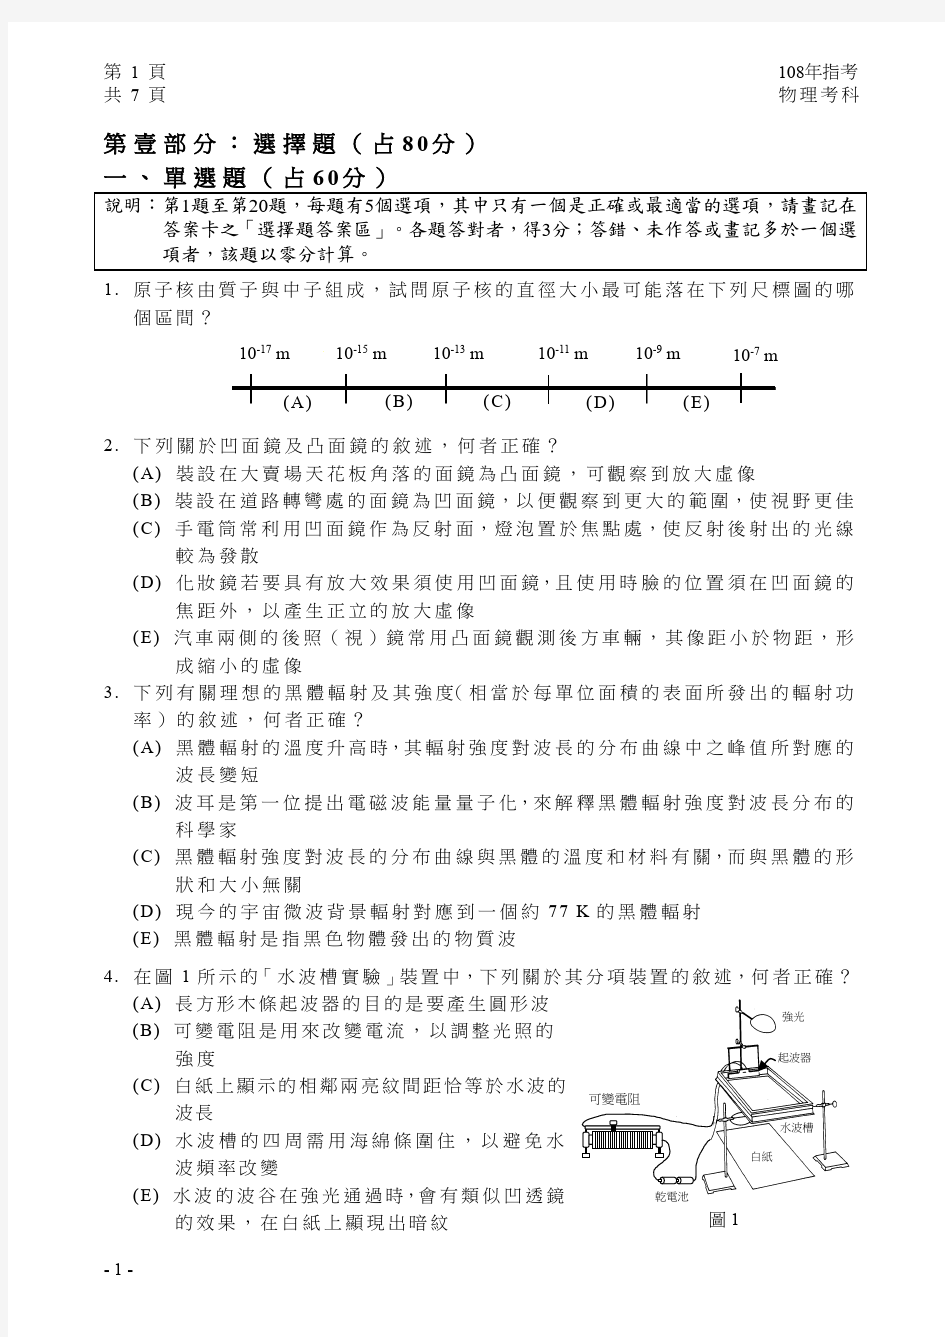 2019台湾大学入学考试试题08-108指考物理试卷定稿